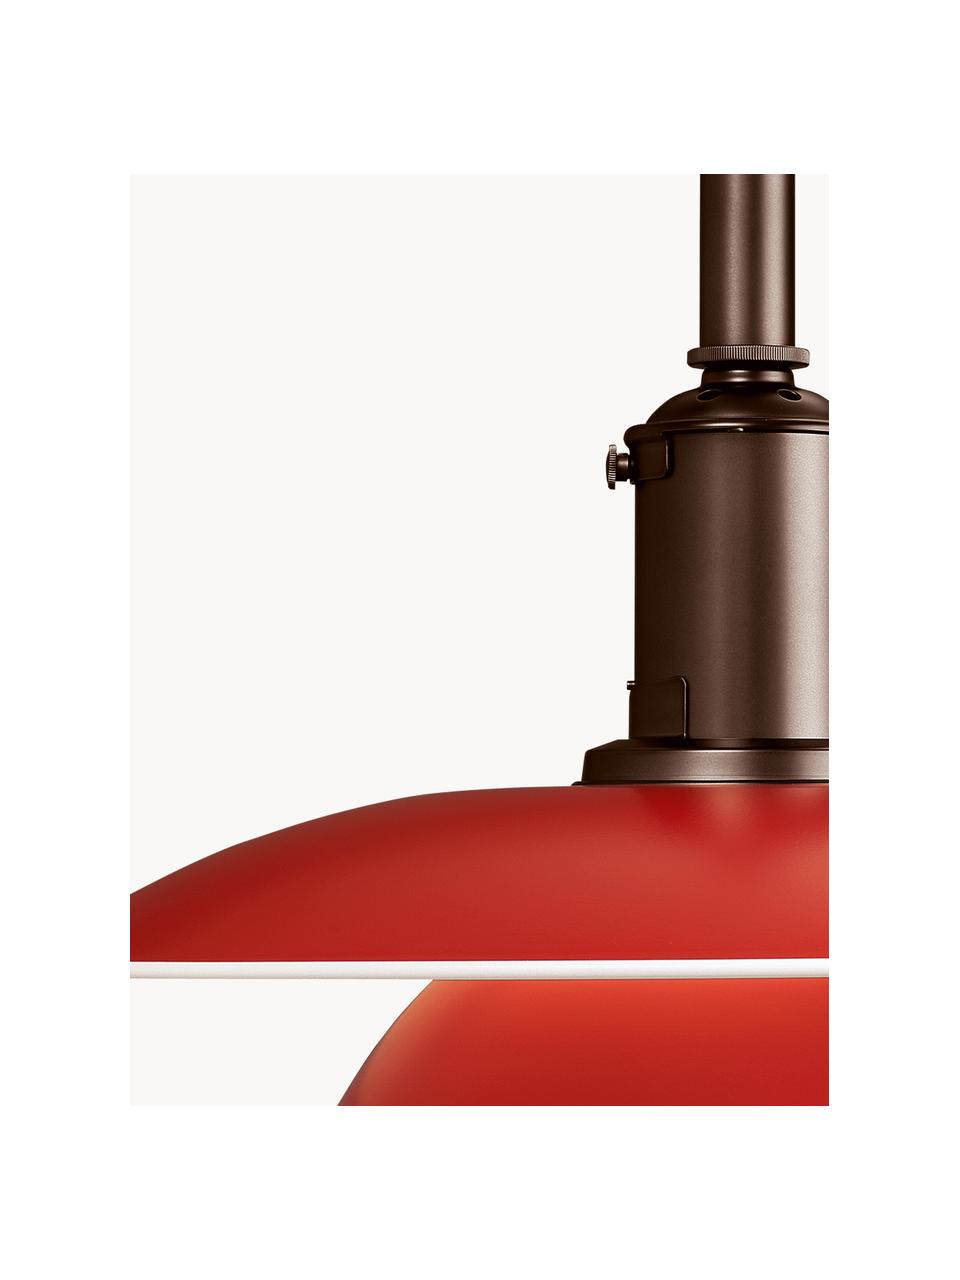 Lampa wisząca PH 3½-3, Czerwony, miedziany, Ø 33 x 31 cm